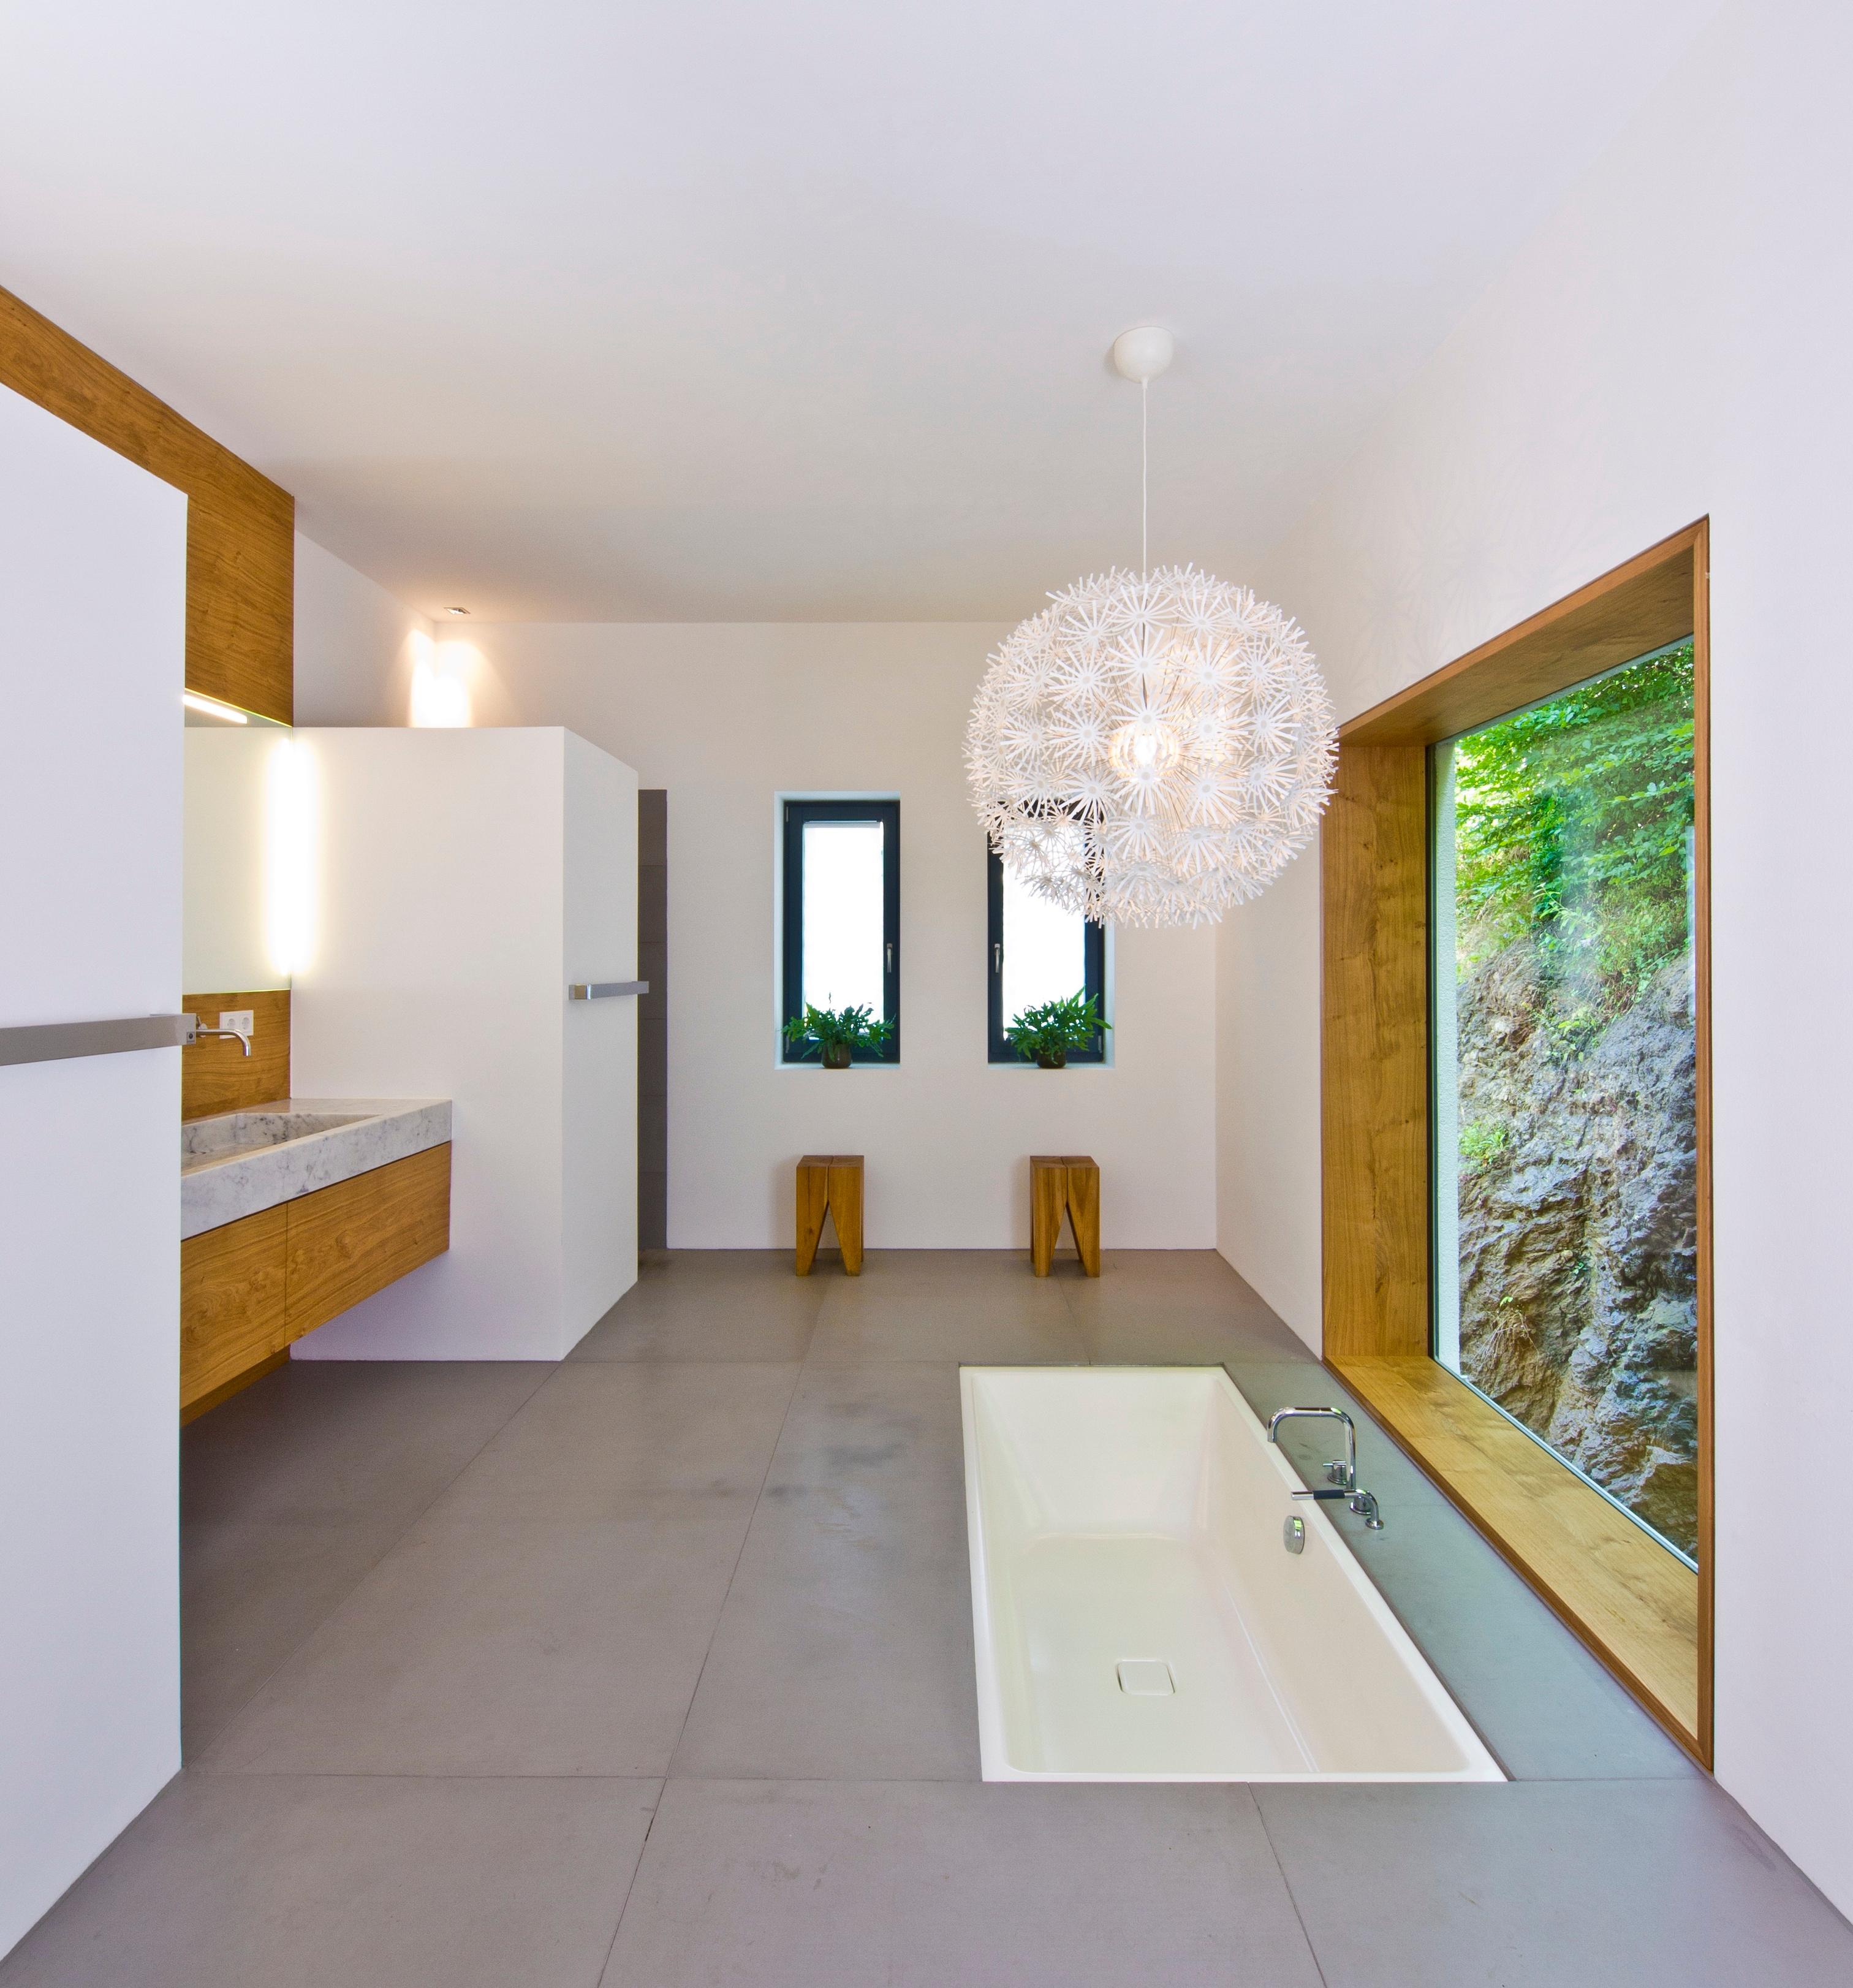 Haus Weitblick #bad #badewanne #waschbecken #badsanierung #panoramafenster ©Baufritz GmbH & Co. KG